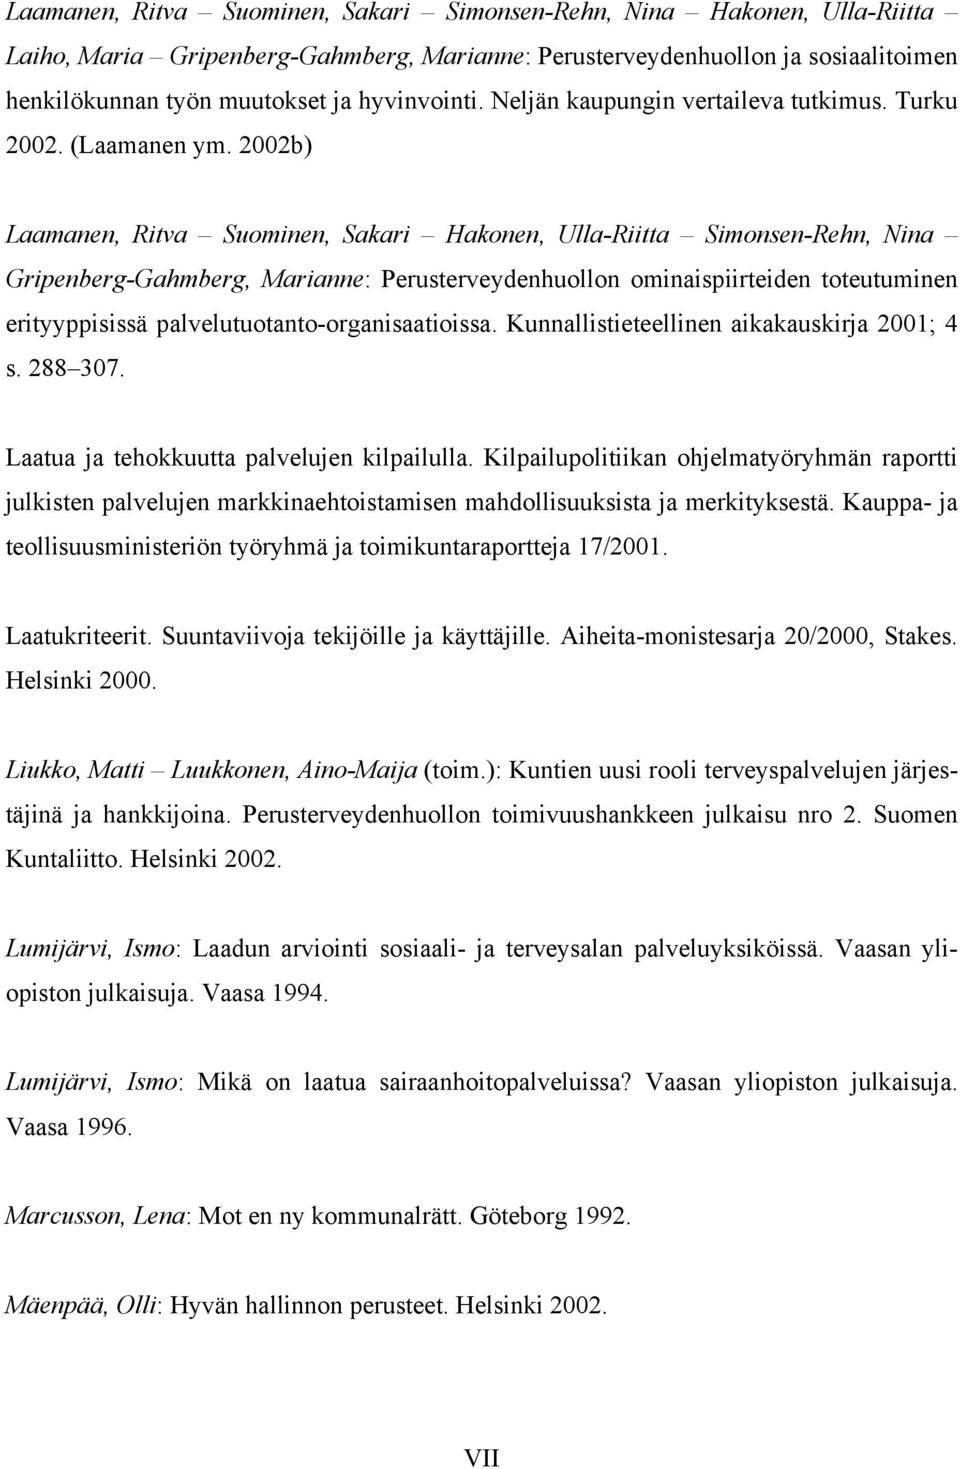 2002b) Laamanen, Ritva Suominen, Sakari Hakonen, Ulla-Riitta Simonsen-Rehn, Nina Gripenberg-Gahmberg, Marianne: Perusterveydenhuollon ominaispiirteiden toteutuminen erityyppisissä